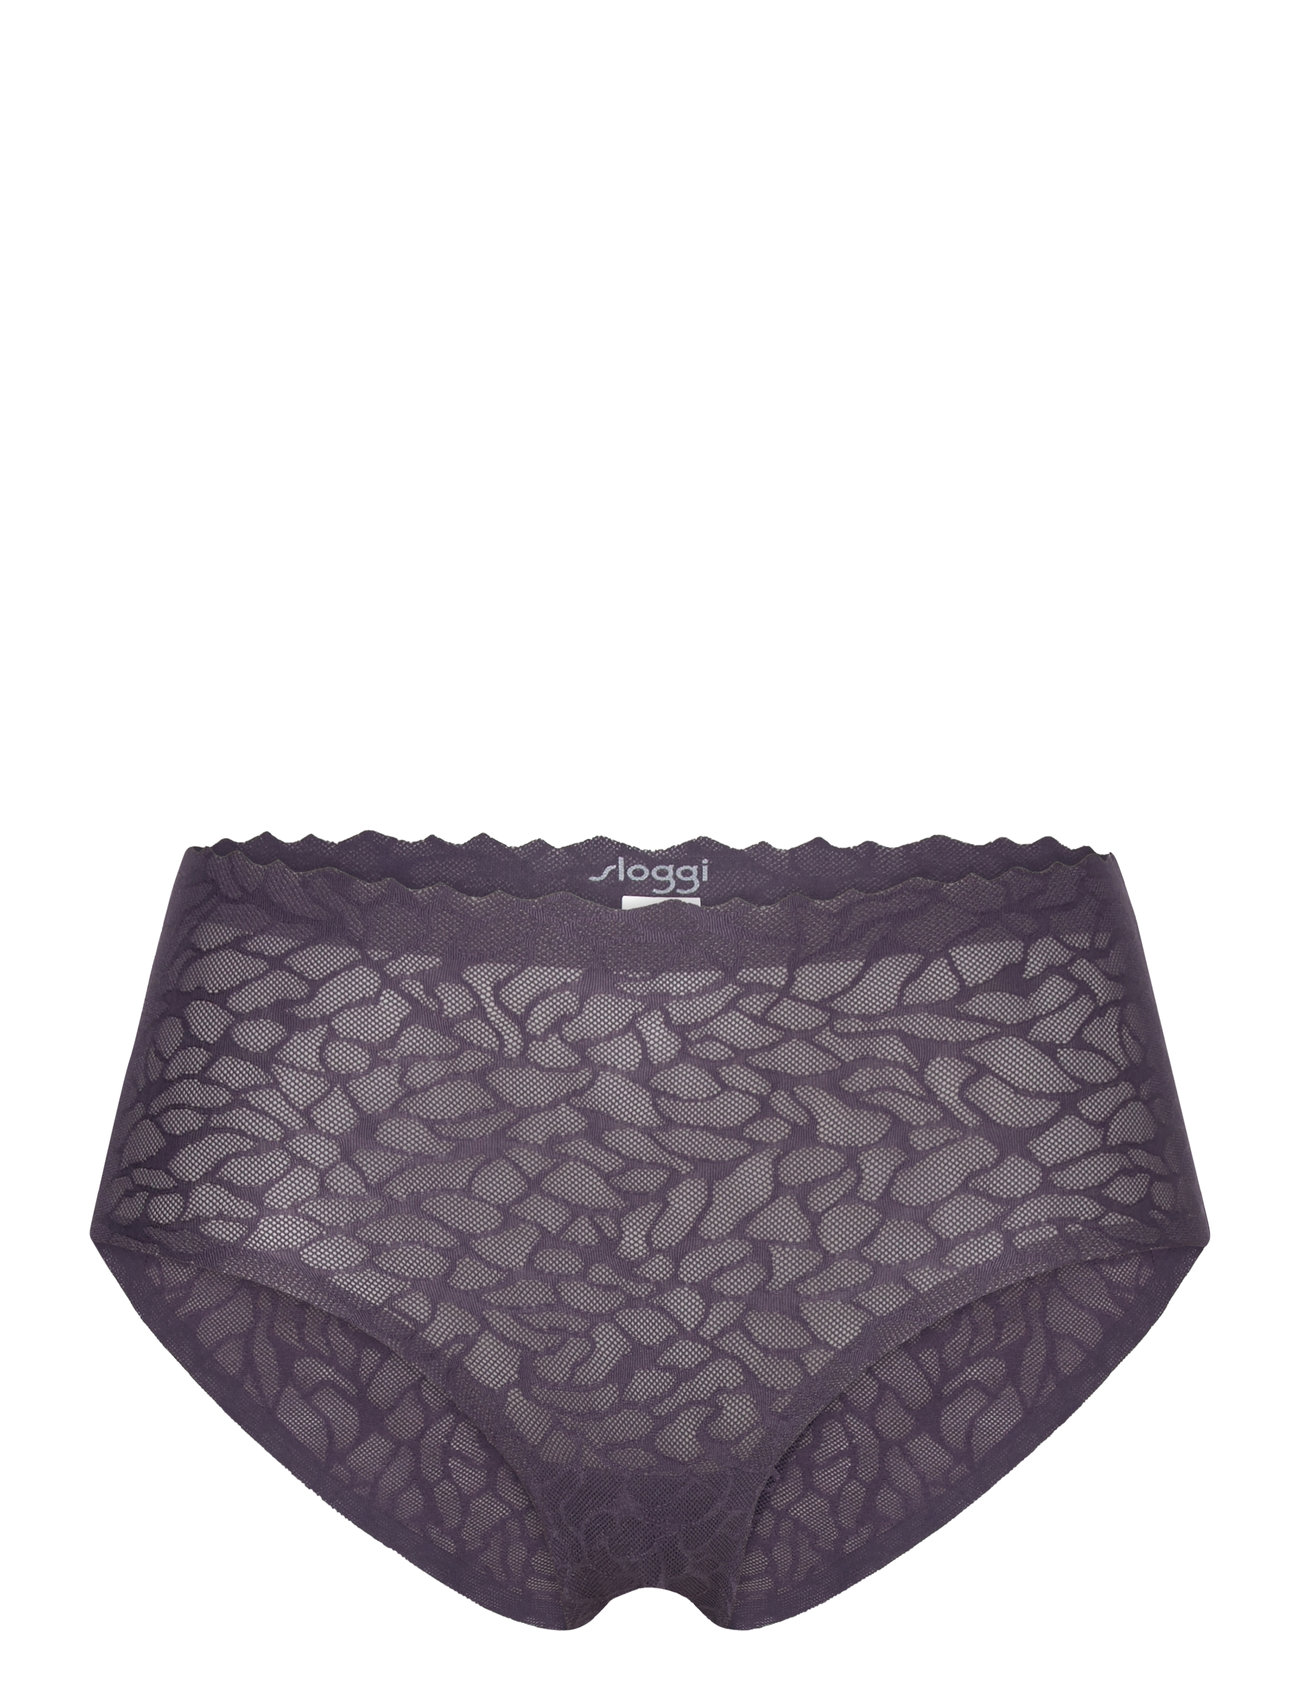 Sloggi Women's Zero Feel Lace 2.0 High Waist Underwear, Ebony